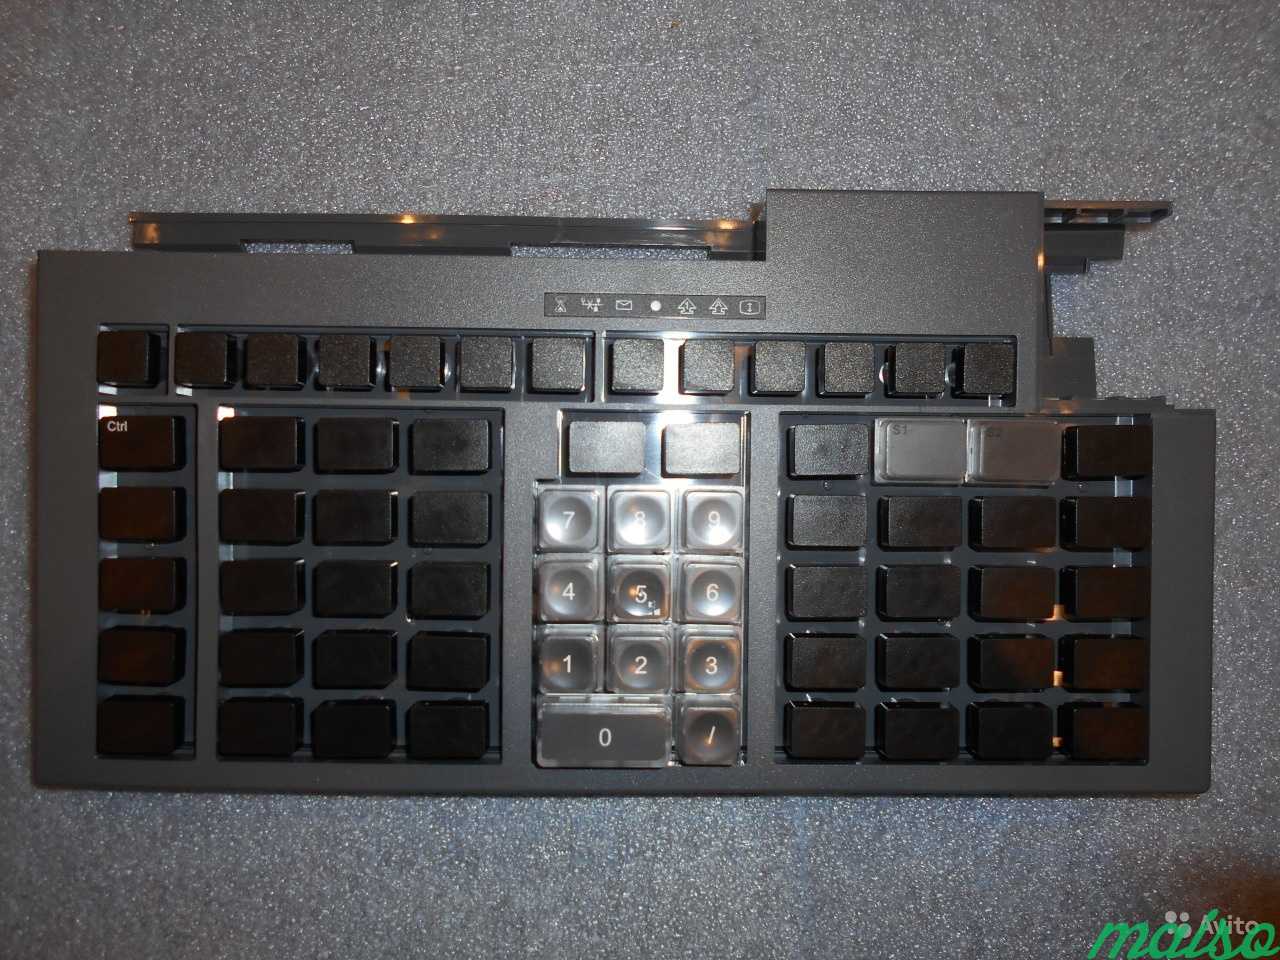 Программируемая POS клавиатура IBM Toshiba 67 key в Москве. Фото 3